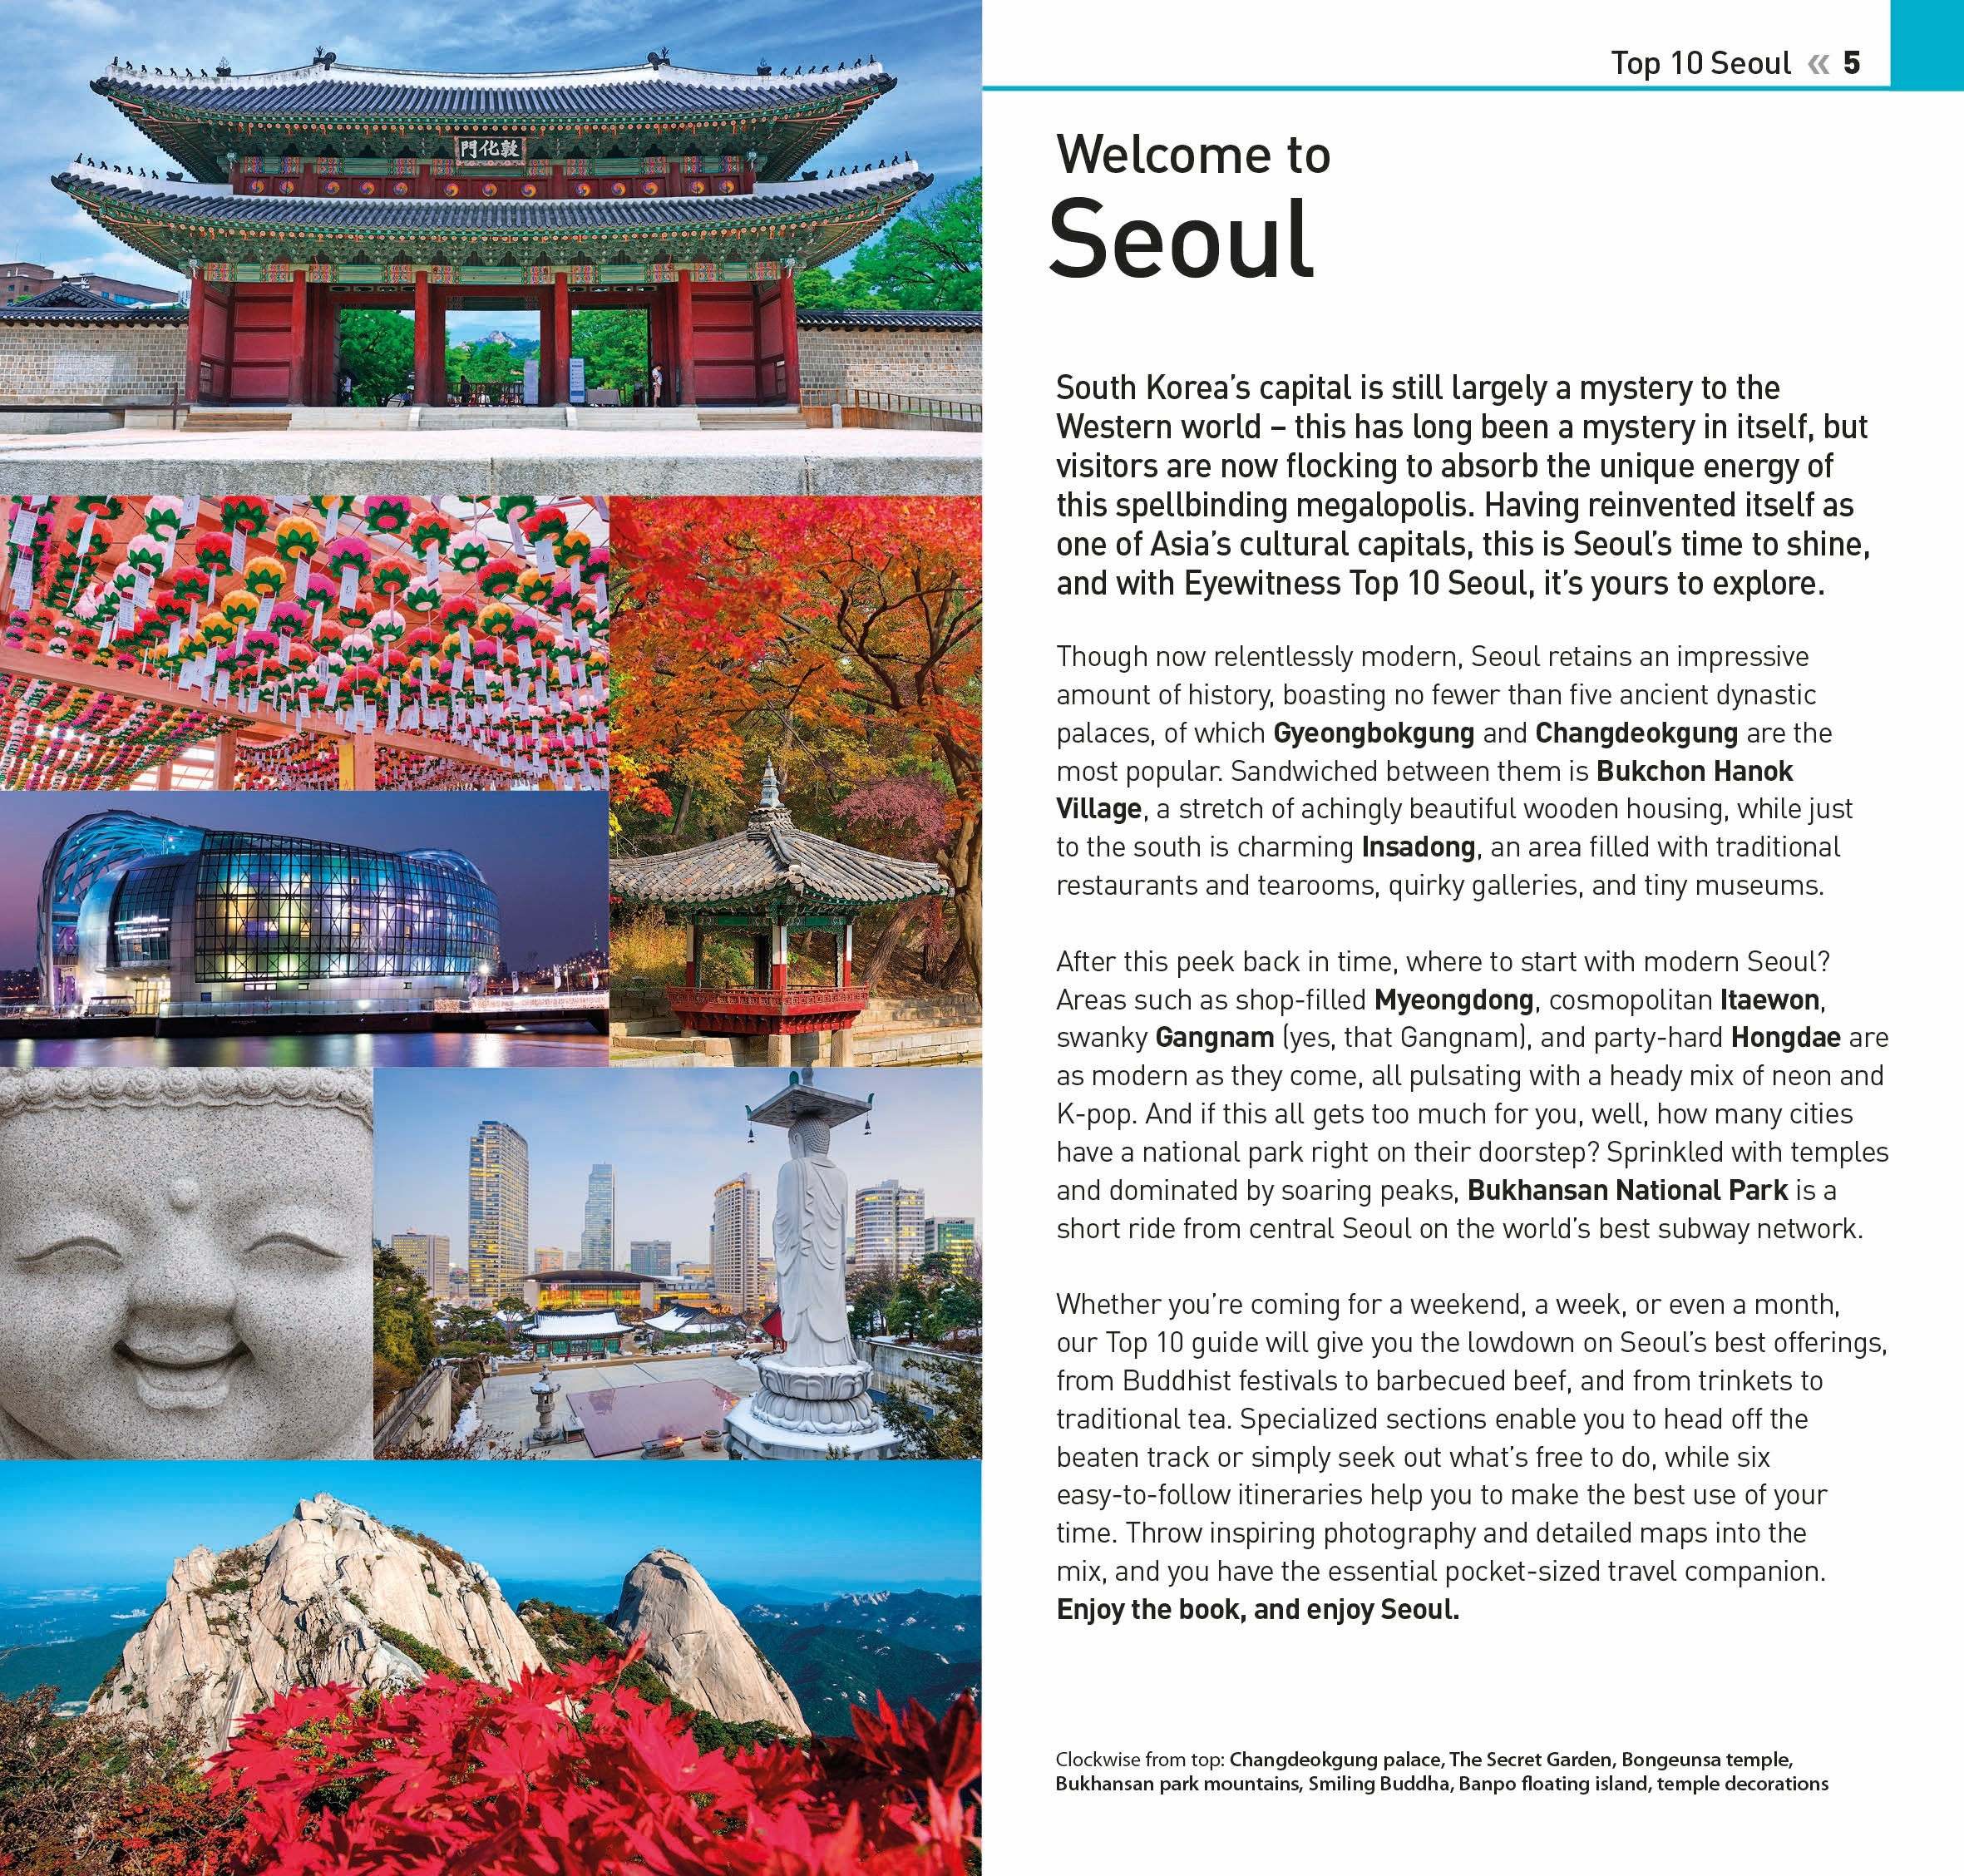 Top 10 Seoul |